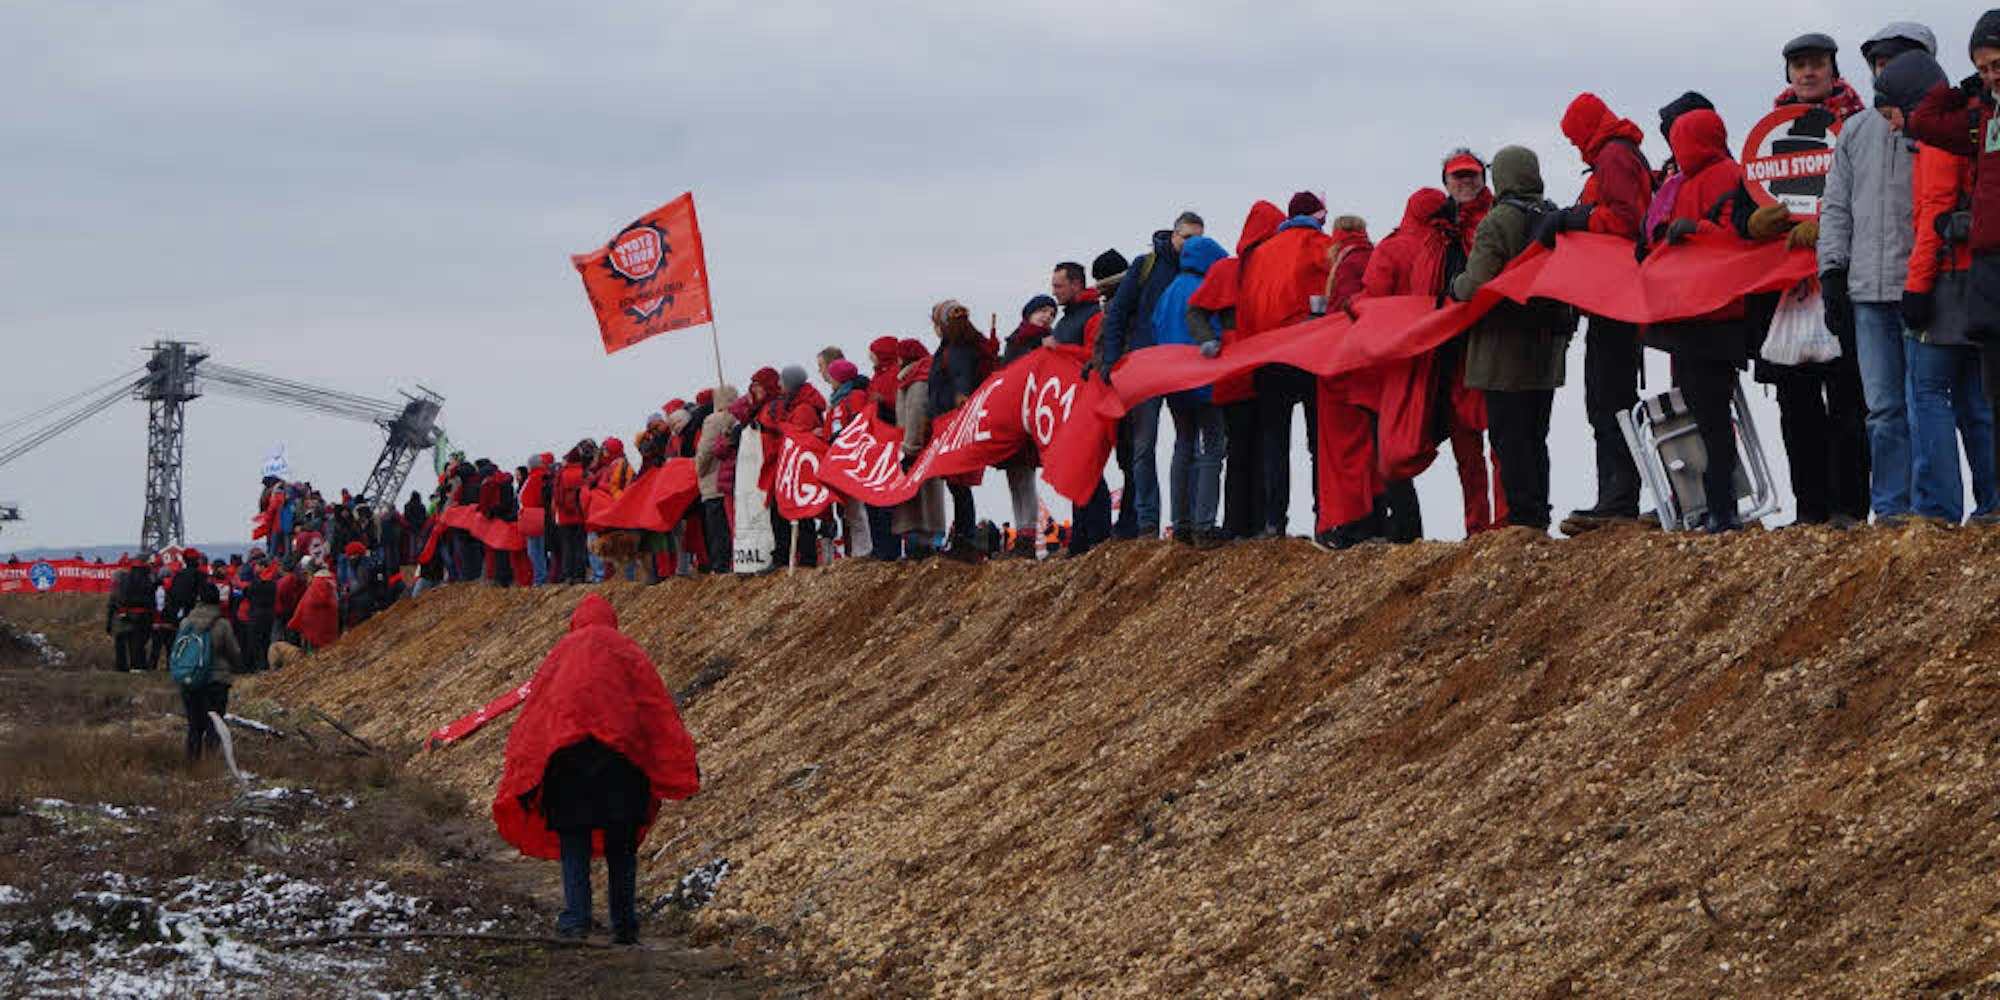 In Rot gekleidet demonstrierten die Kohlegegner dafür, den „Ausstieg beherzt anzupacken“. Zum vierten Mal zogen sie die „rote Linie“.